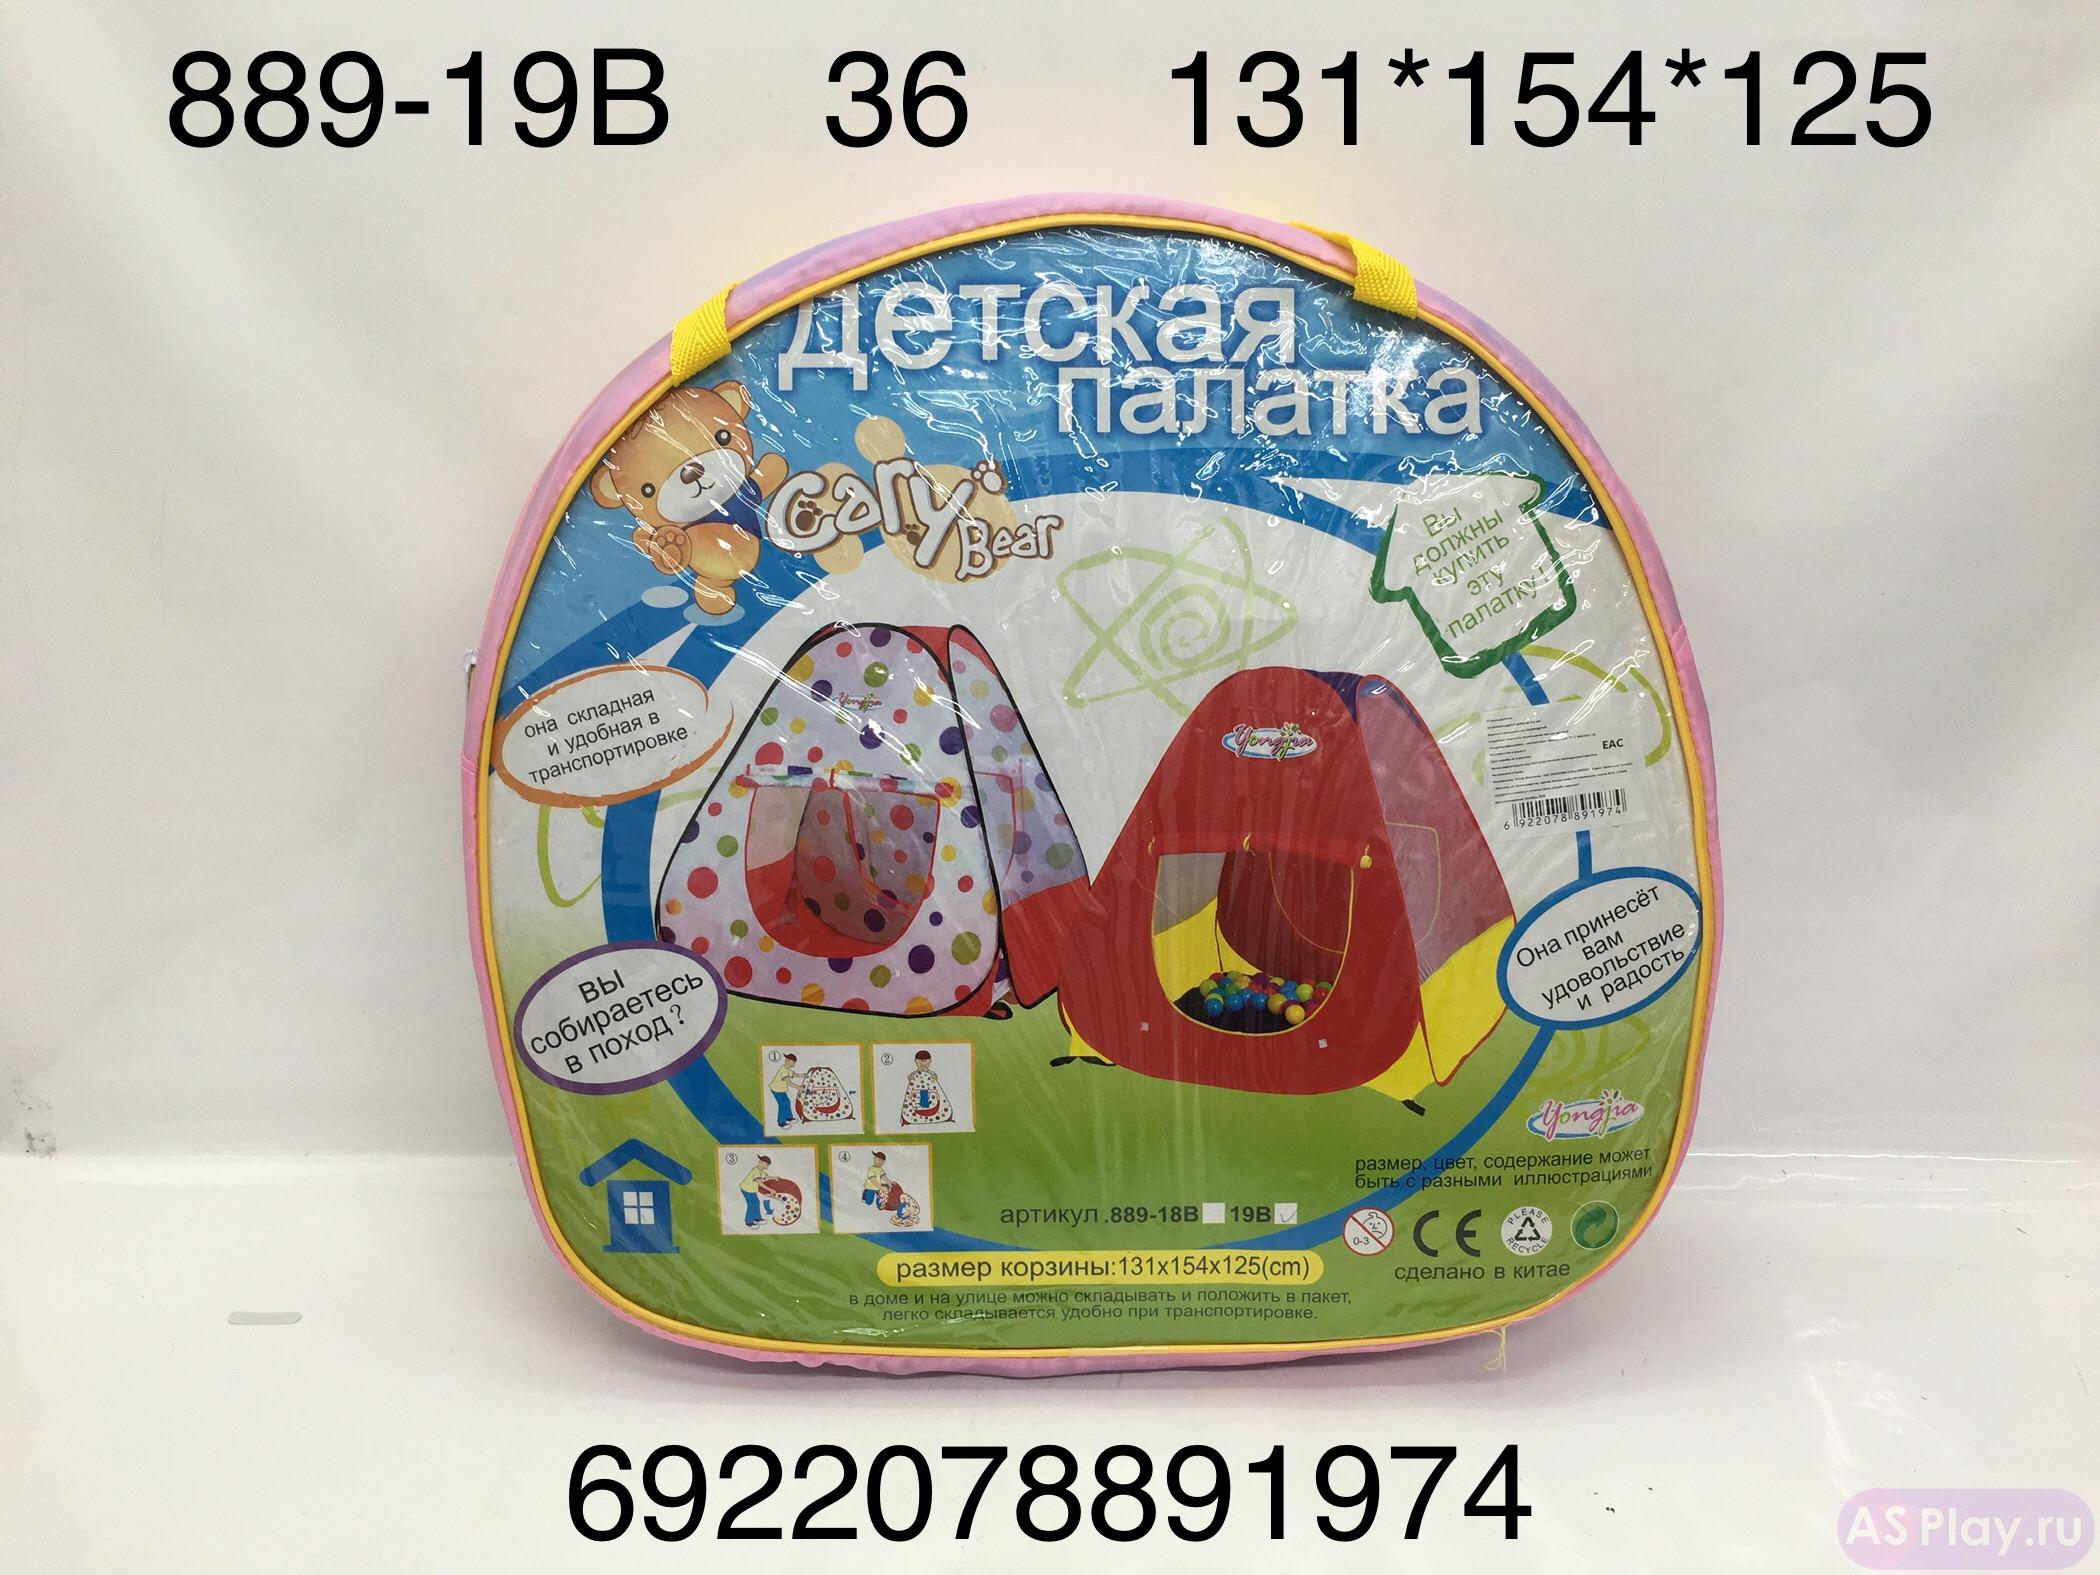 889-19B Детская палатка, 36 шт. в кор. 889-19B